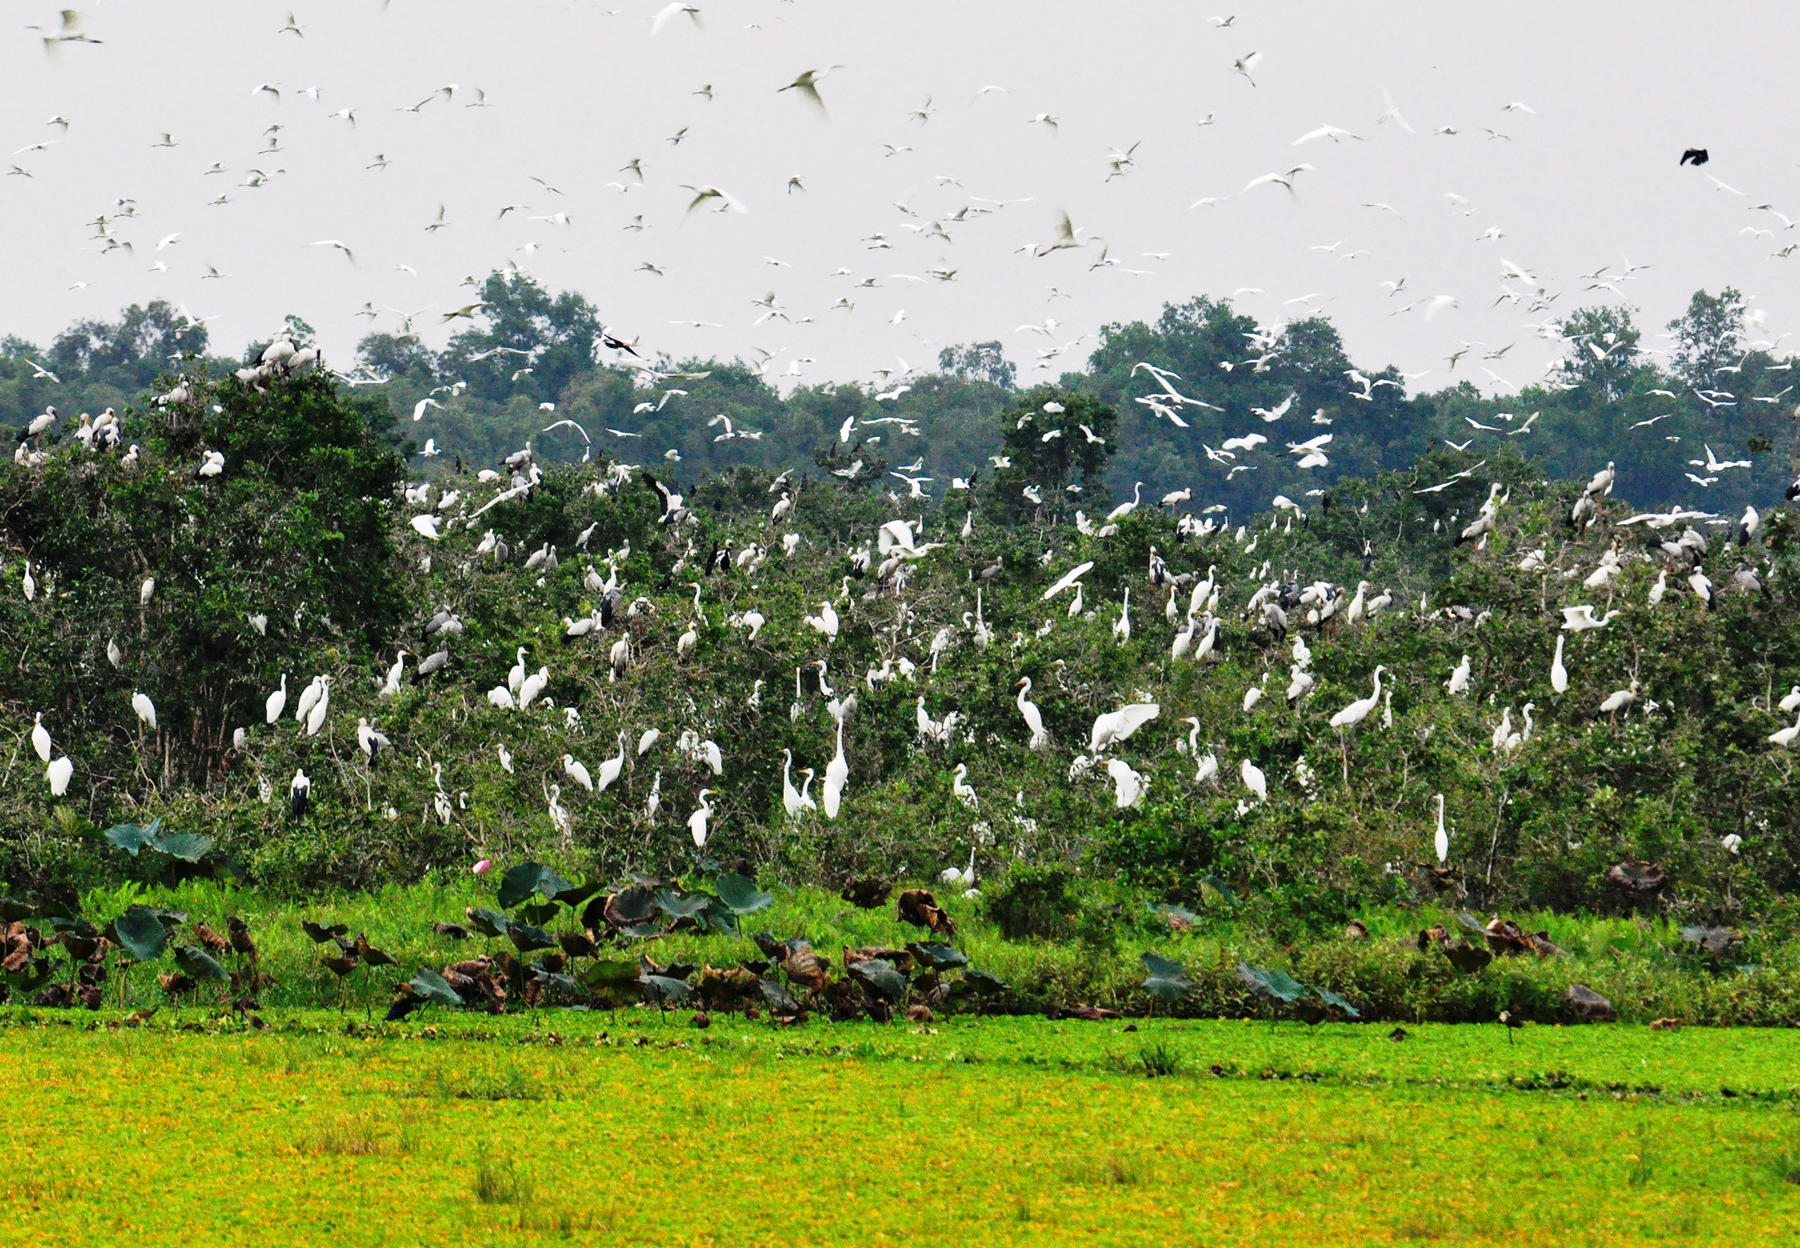 Vùng Đồng Tháp Mười ở Long An có một nơi rộng 5.000ha, thấy đầm lầy, cù lao, rừng tràm, chim đậu kín cây - Ảnh 6.